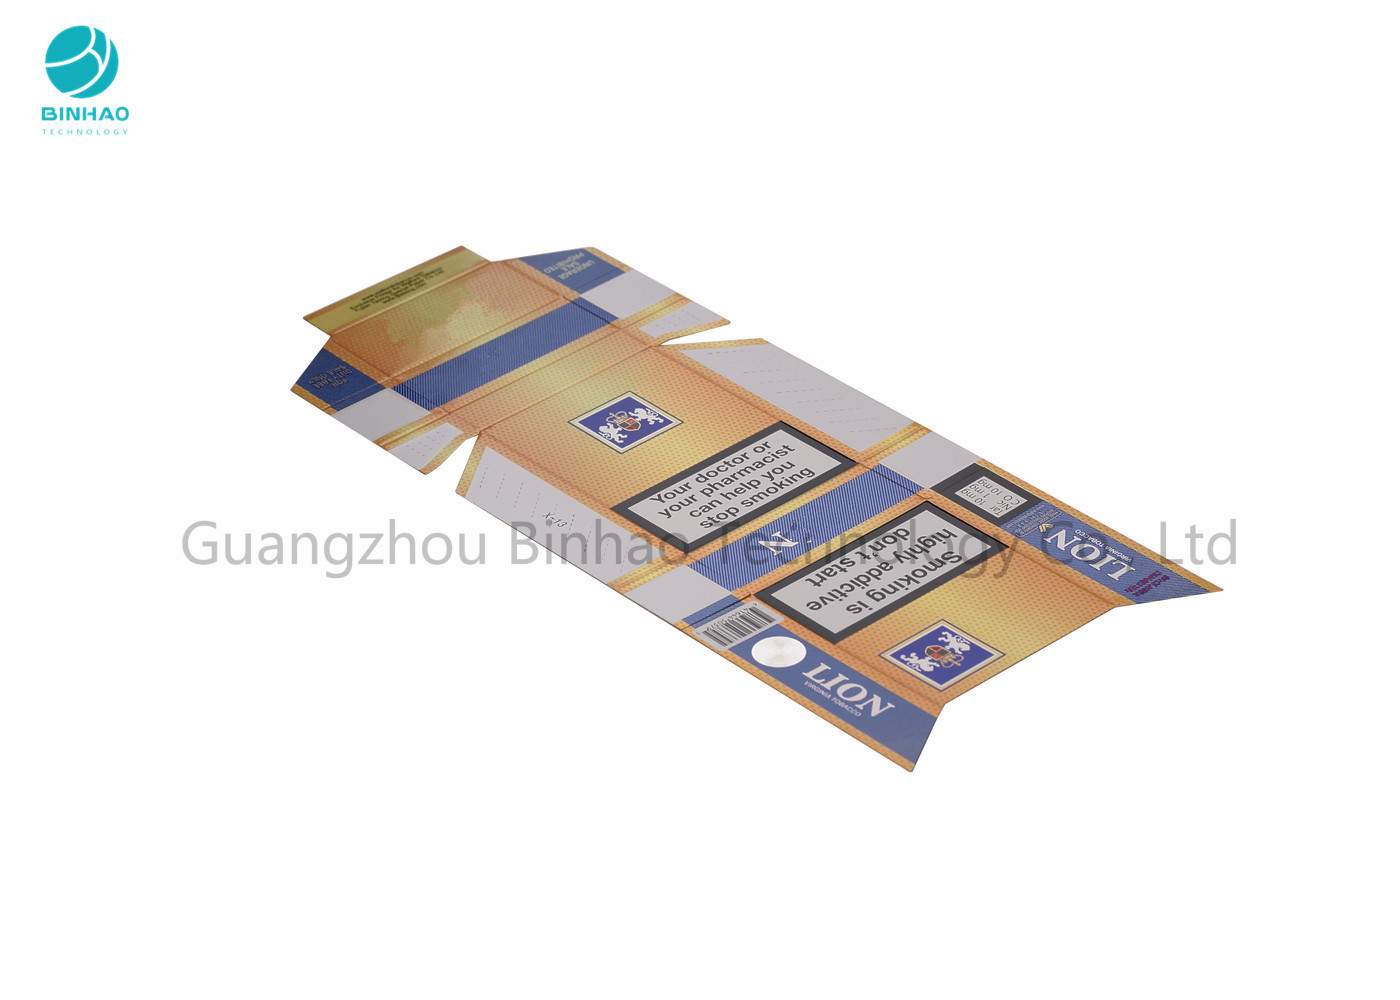 Papierpappzigarettenetuis/farbenreiches Druckencig-Paket mit dem heißen Stempeln